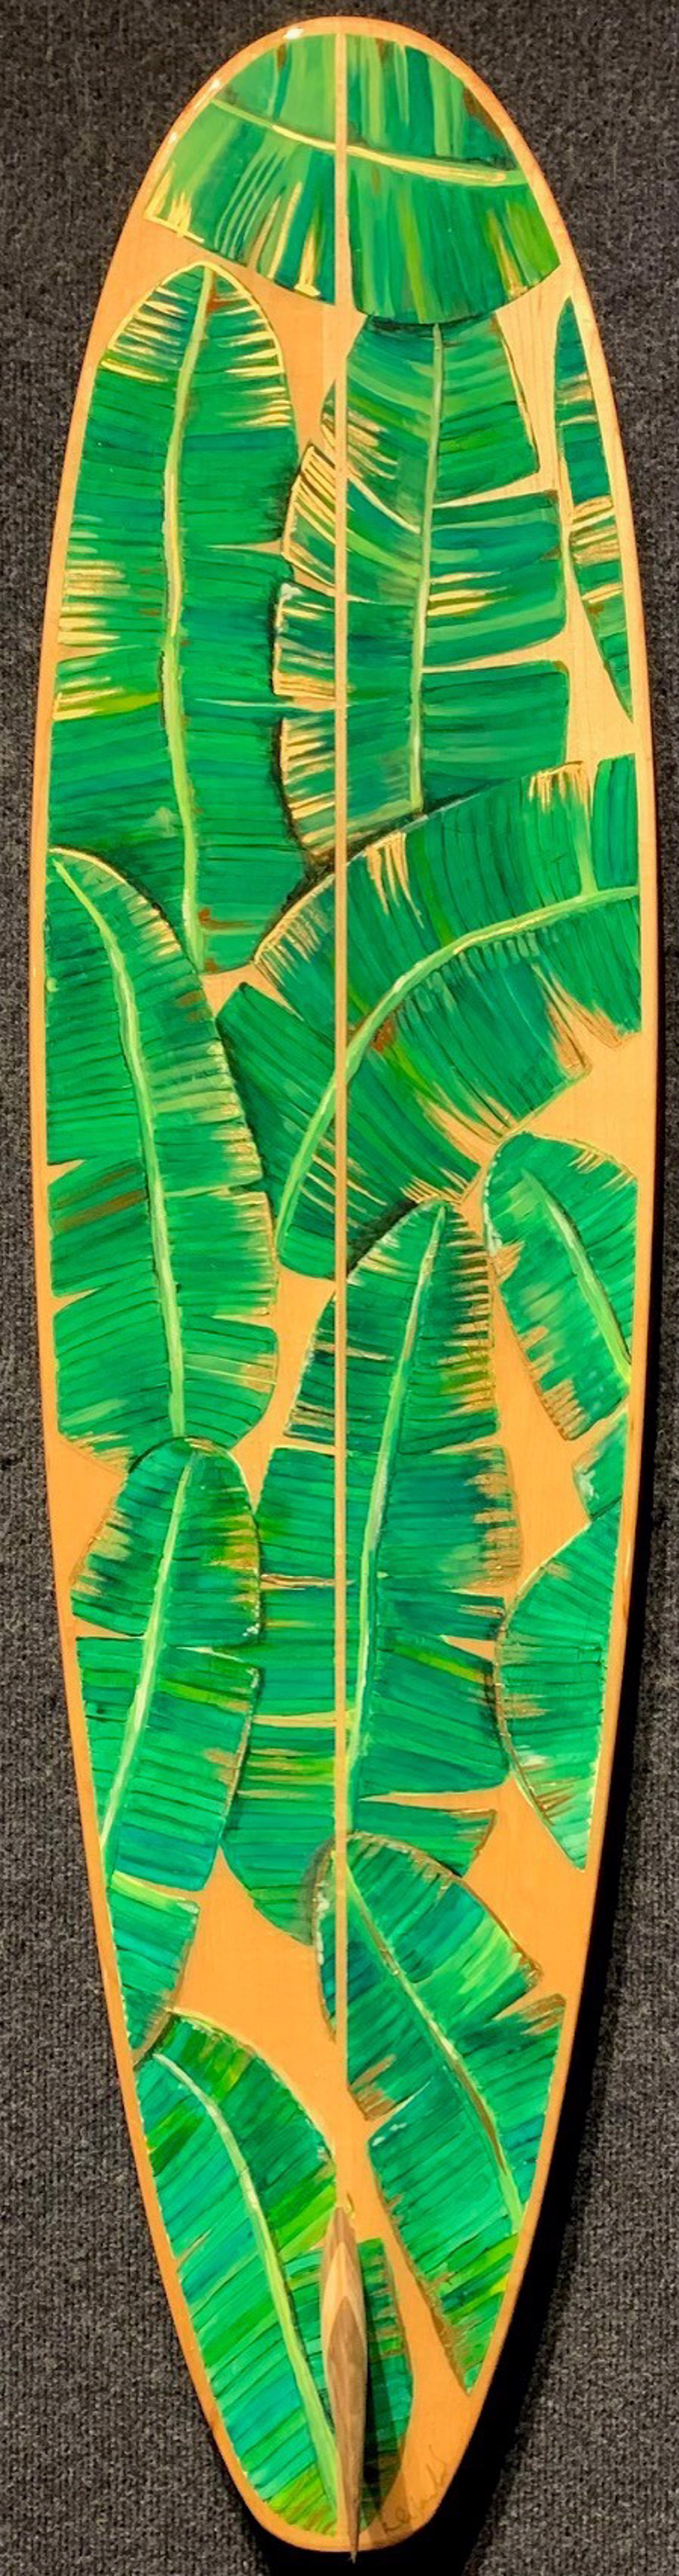 Banana Leaf Surfboard by Rebecca Krannichfeld